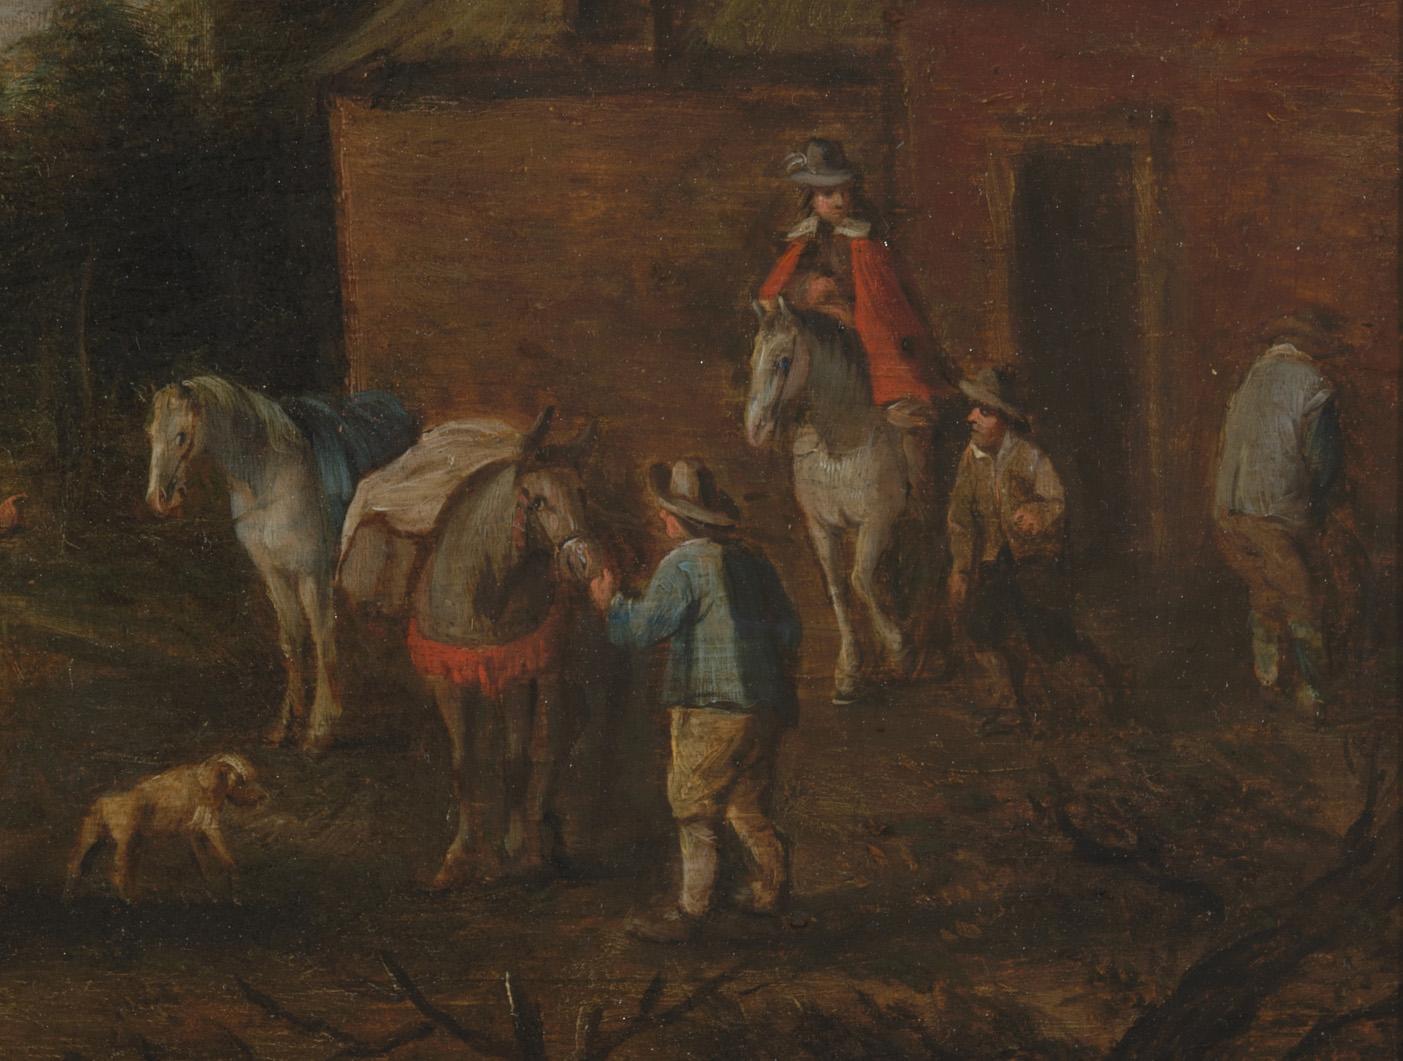 Comme le faisait souvent le peintre néerlandais Philips Wouwerman, cet artiste a peint des voyageurs s'arrêtant dans une auberge ou une ferme. L'un des hommes est descendu de son cheval pour uriner contre la façade du bâtiment. Le motif de l'homme